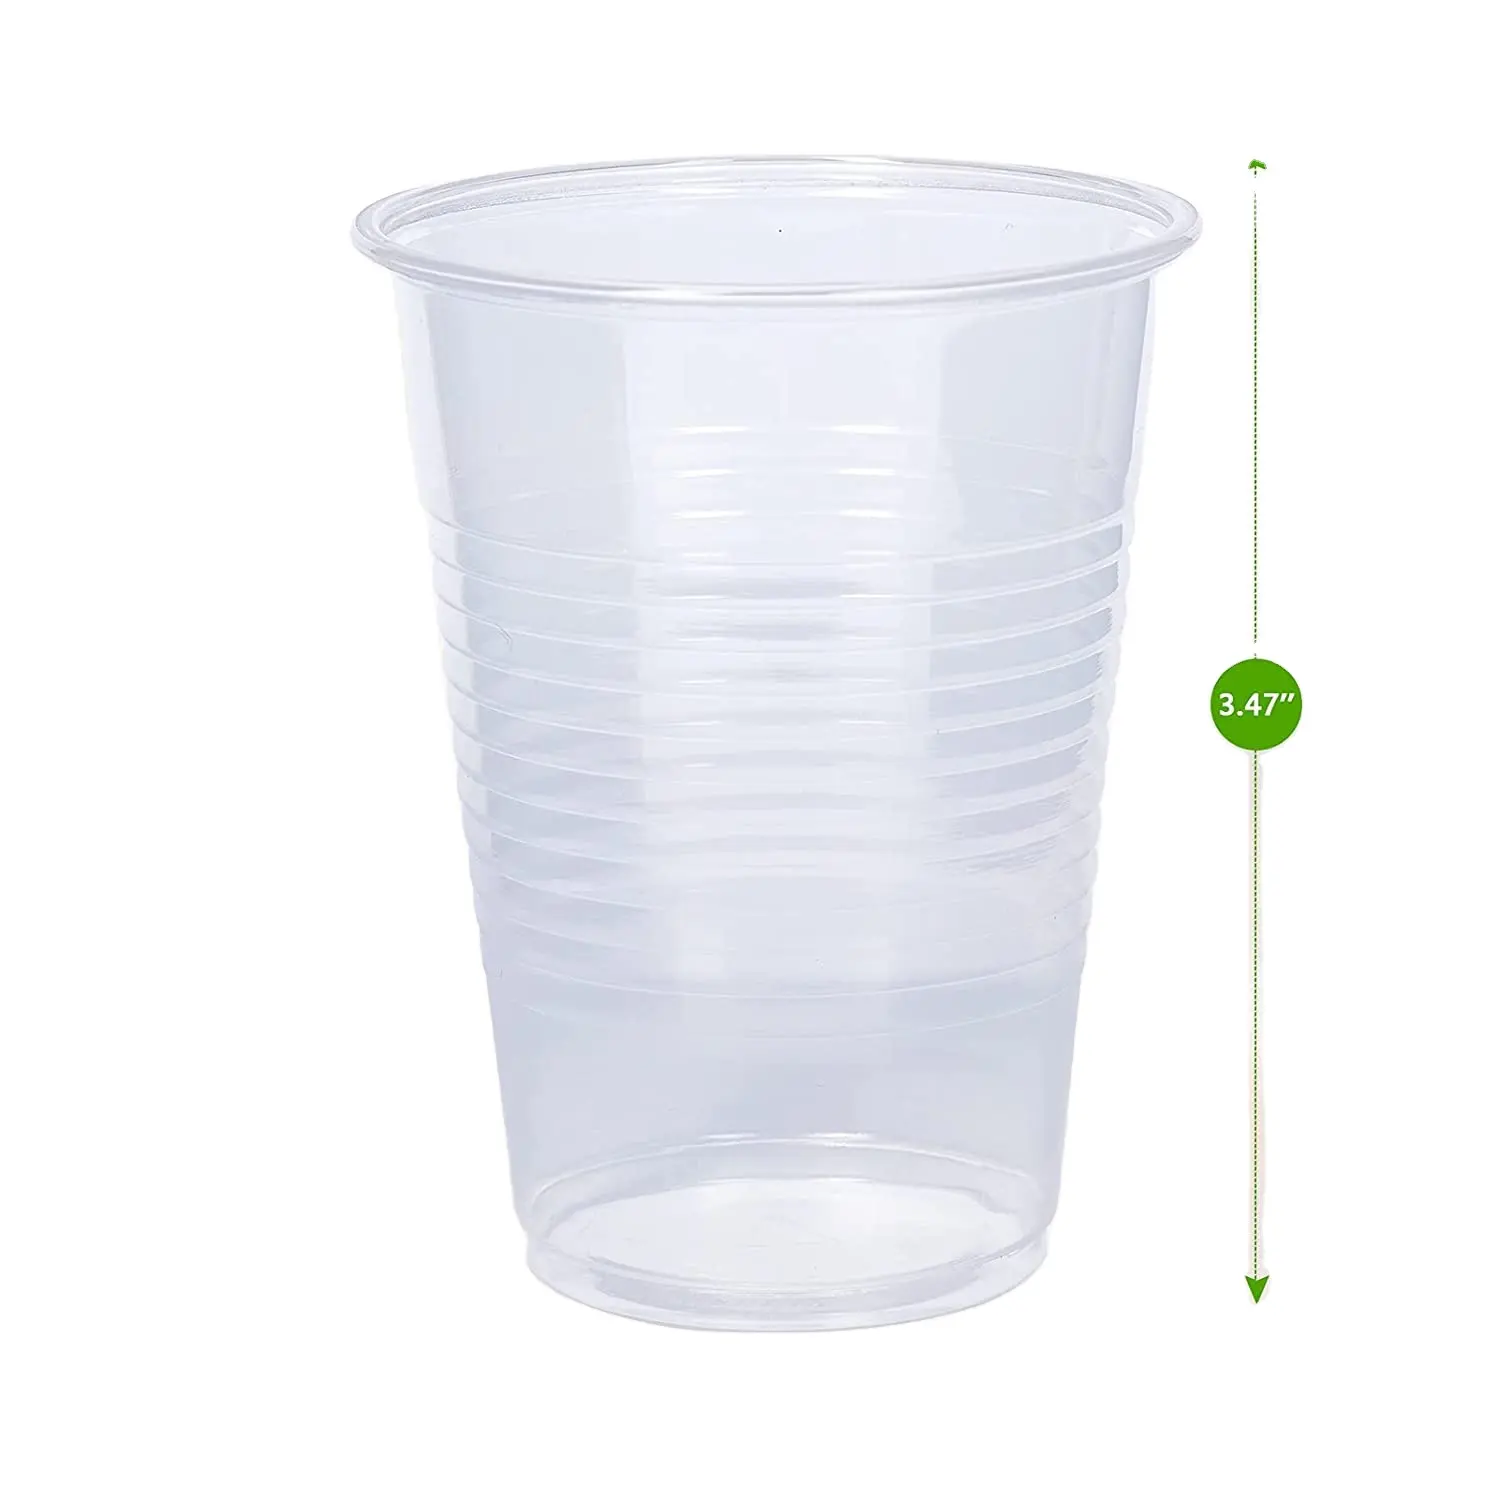 7Oz स्पष्ट प्लास्टिक कप ठंडे पार्टी पीने के कप के लिए किसी भी अवसर, बर्फ चाय, रस, सोडा, और कॉफी के लिए चश्मा पार्टी, पिकनिक, बी बी